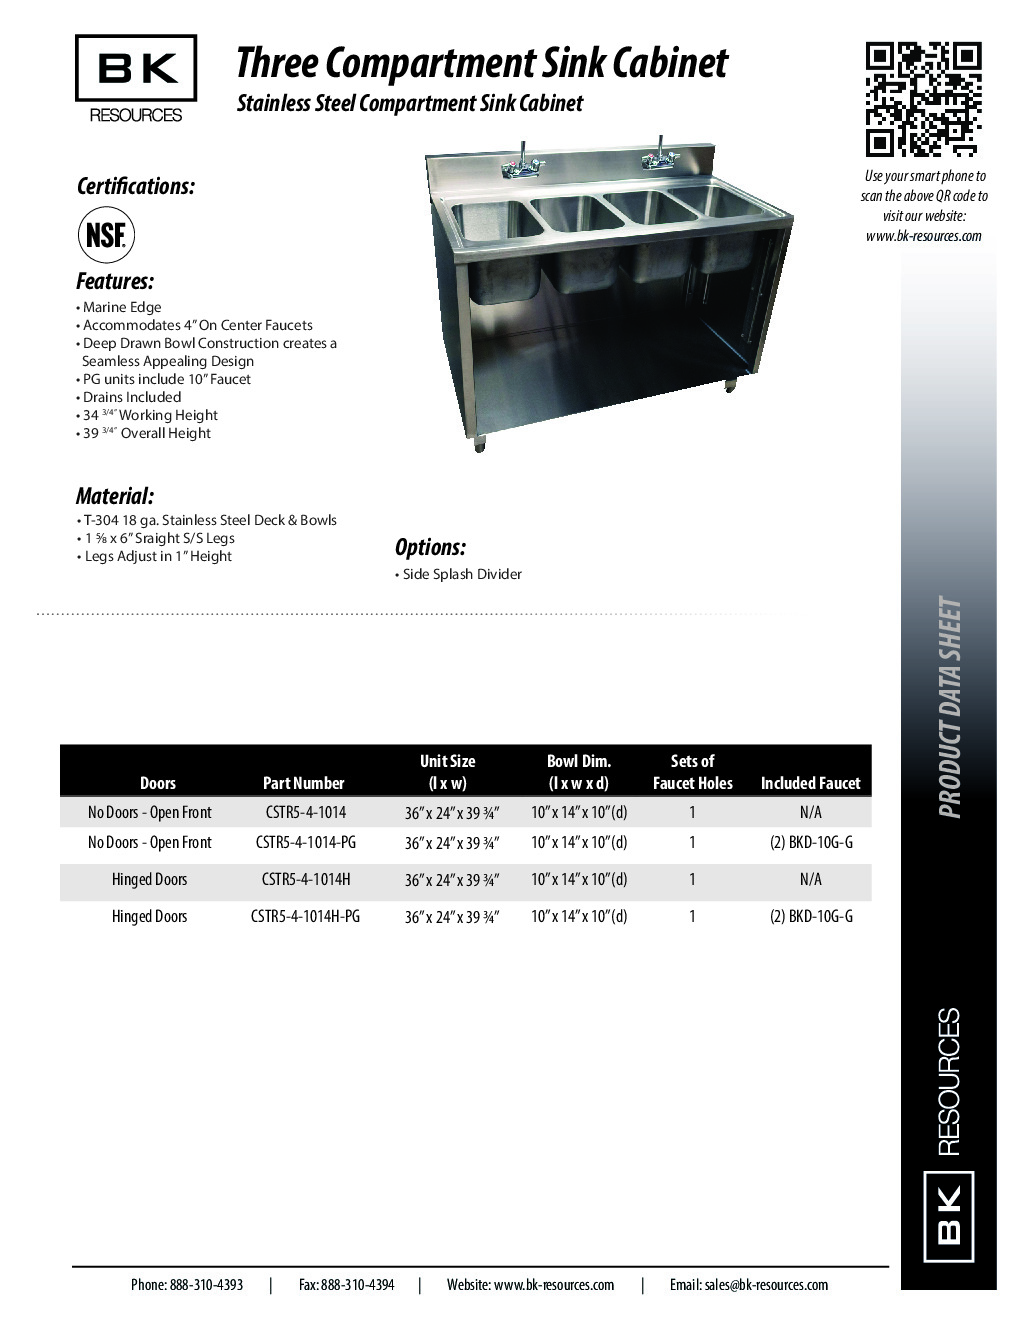 BK Resources CSTR5-4-1014 (4) Four Compartment Sink